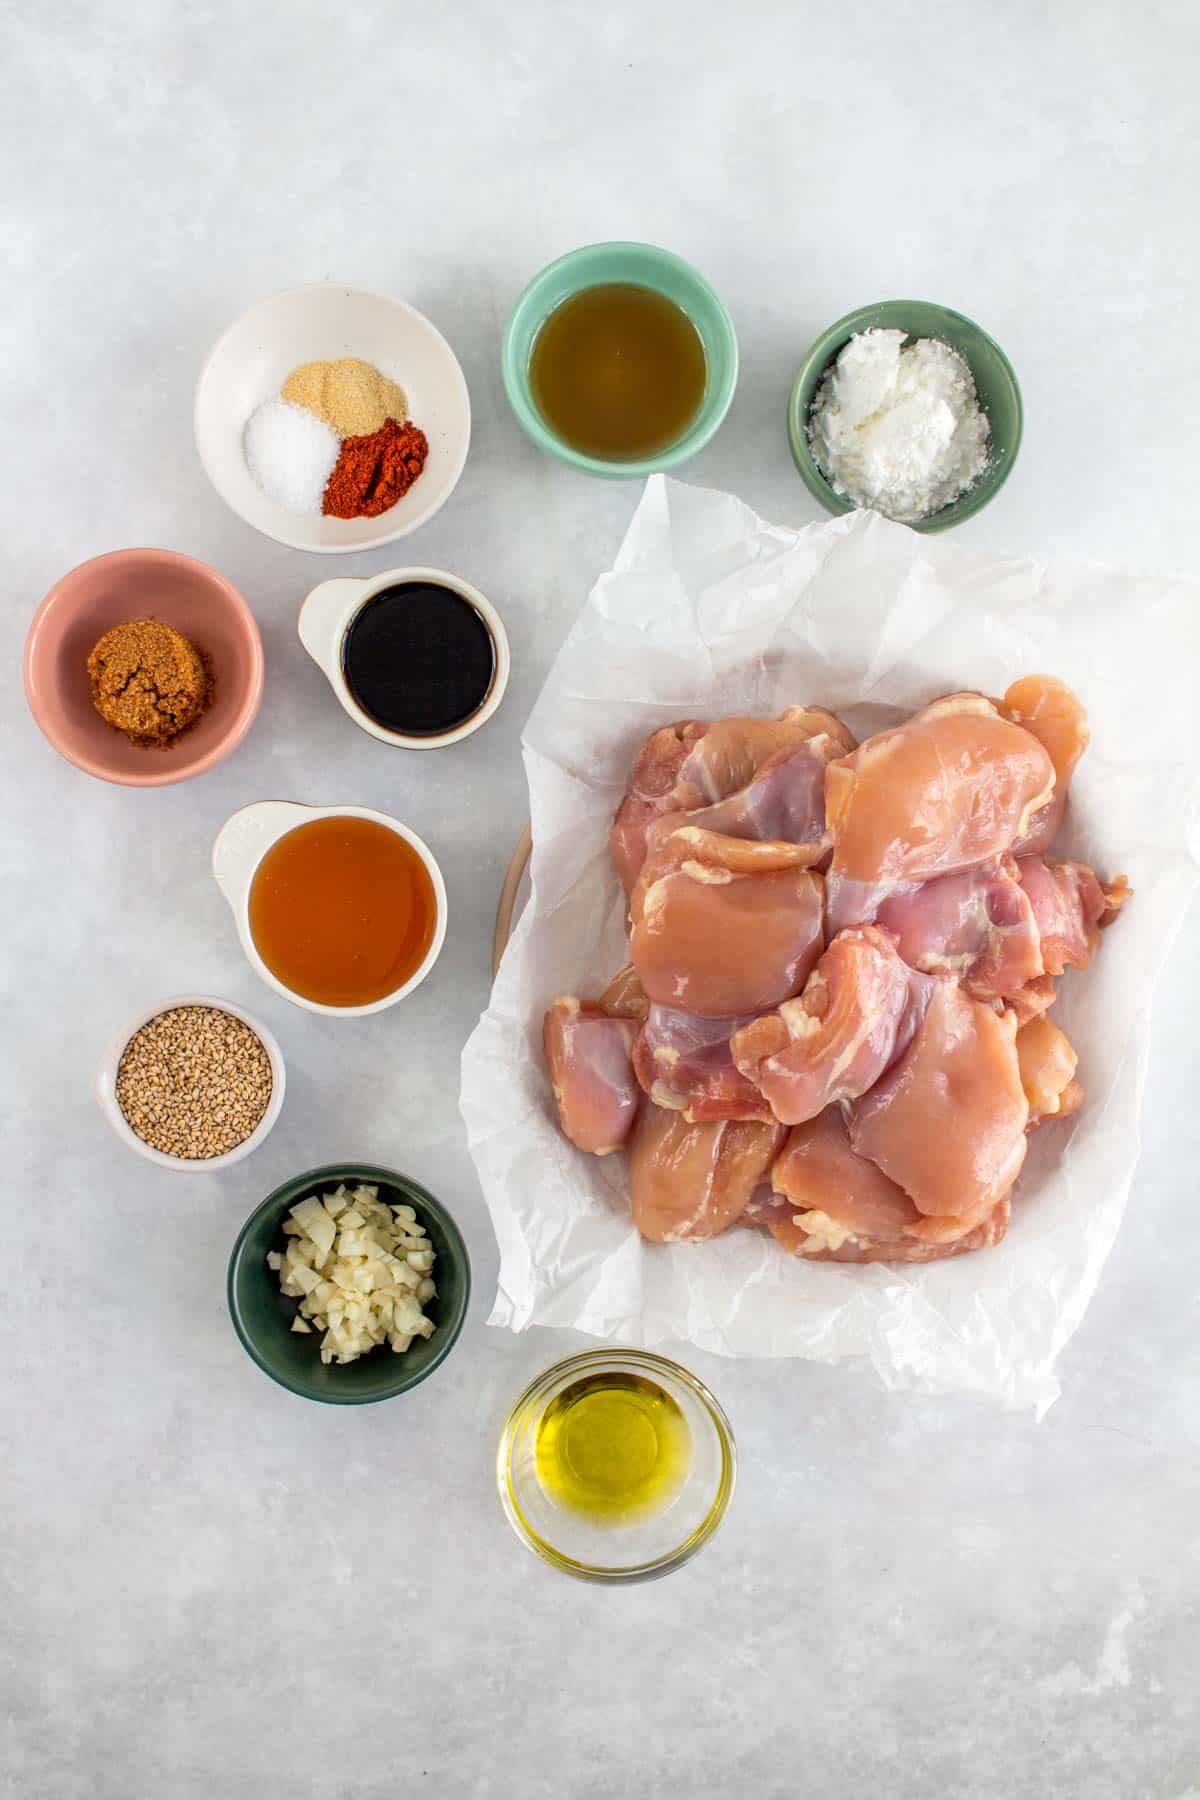 Ingredients to make honey sesame chicken.